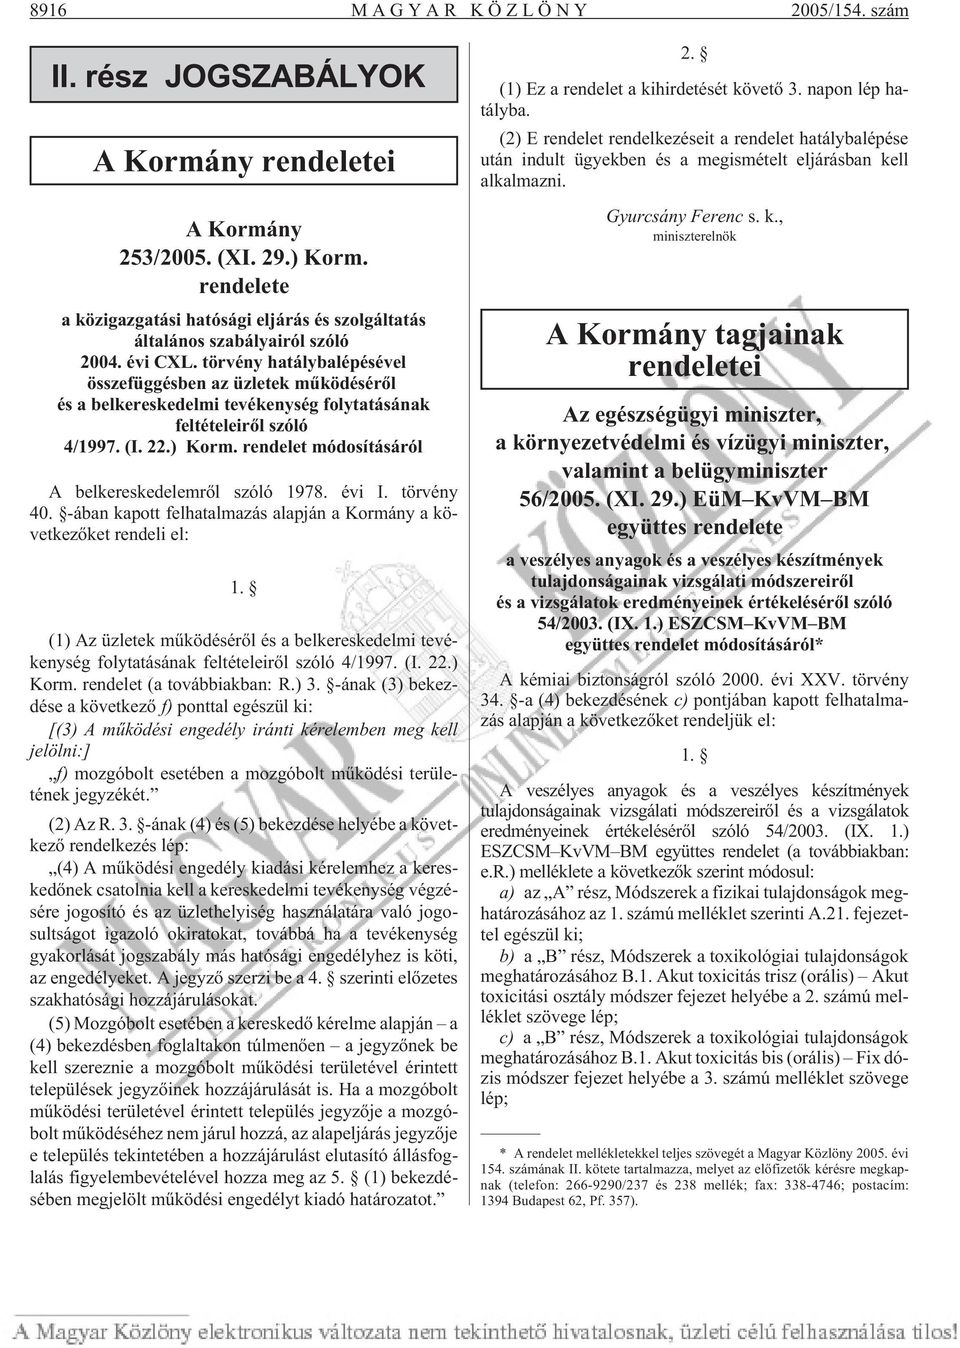 rendelet módosításáról A belkereskedelemrõl szóló 1978. évi I. törvény 40. -ában kapott felhatalmazás alapján a Kormány a következõket rendeli el: 1.